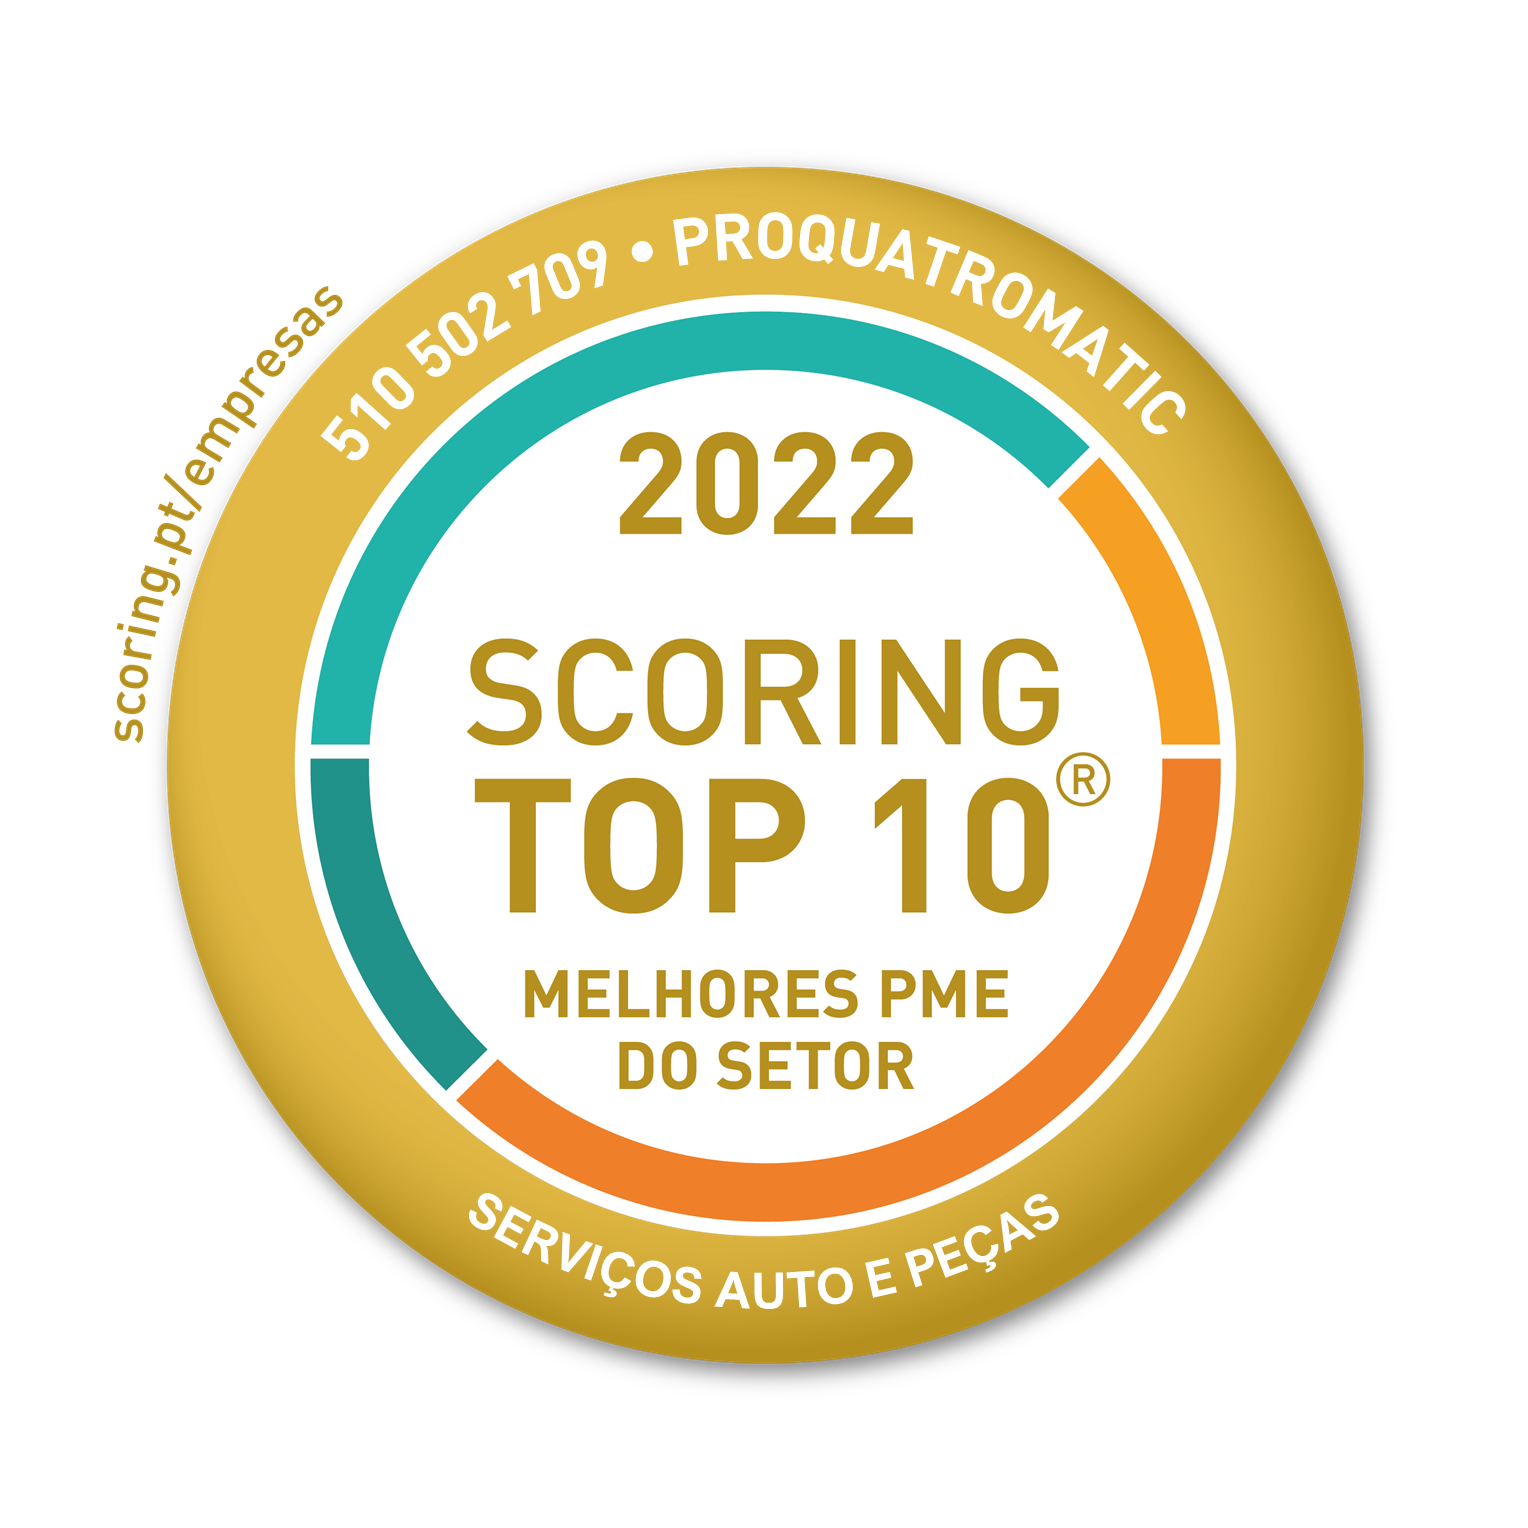 Melhores PME do Mercado - Scoring top 10 2022